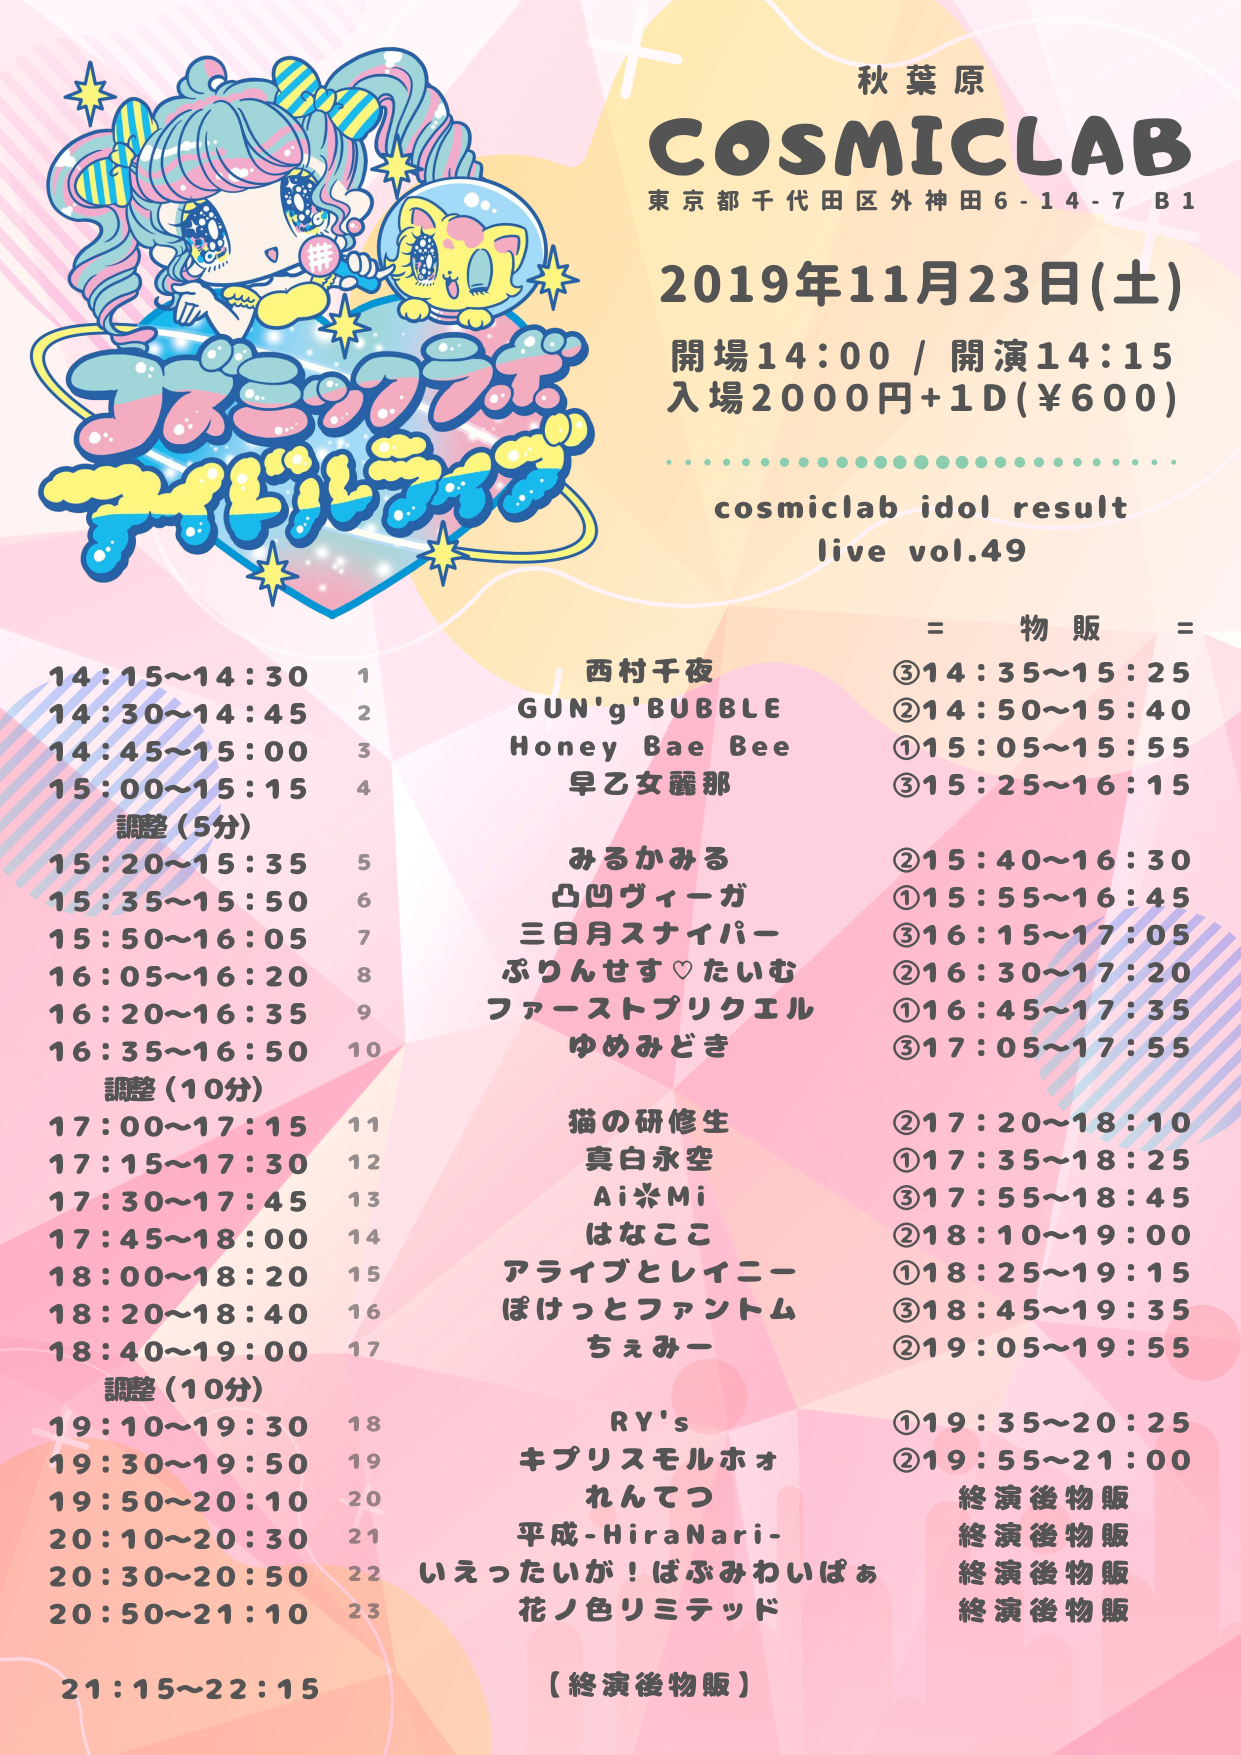 11/23（土）cosmiclab idol result live vol.49@秋葉原COSMIC LAB